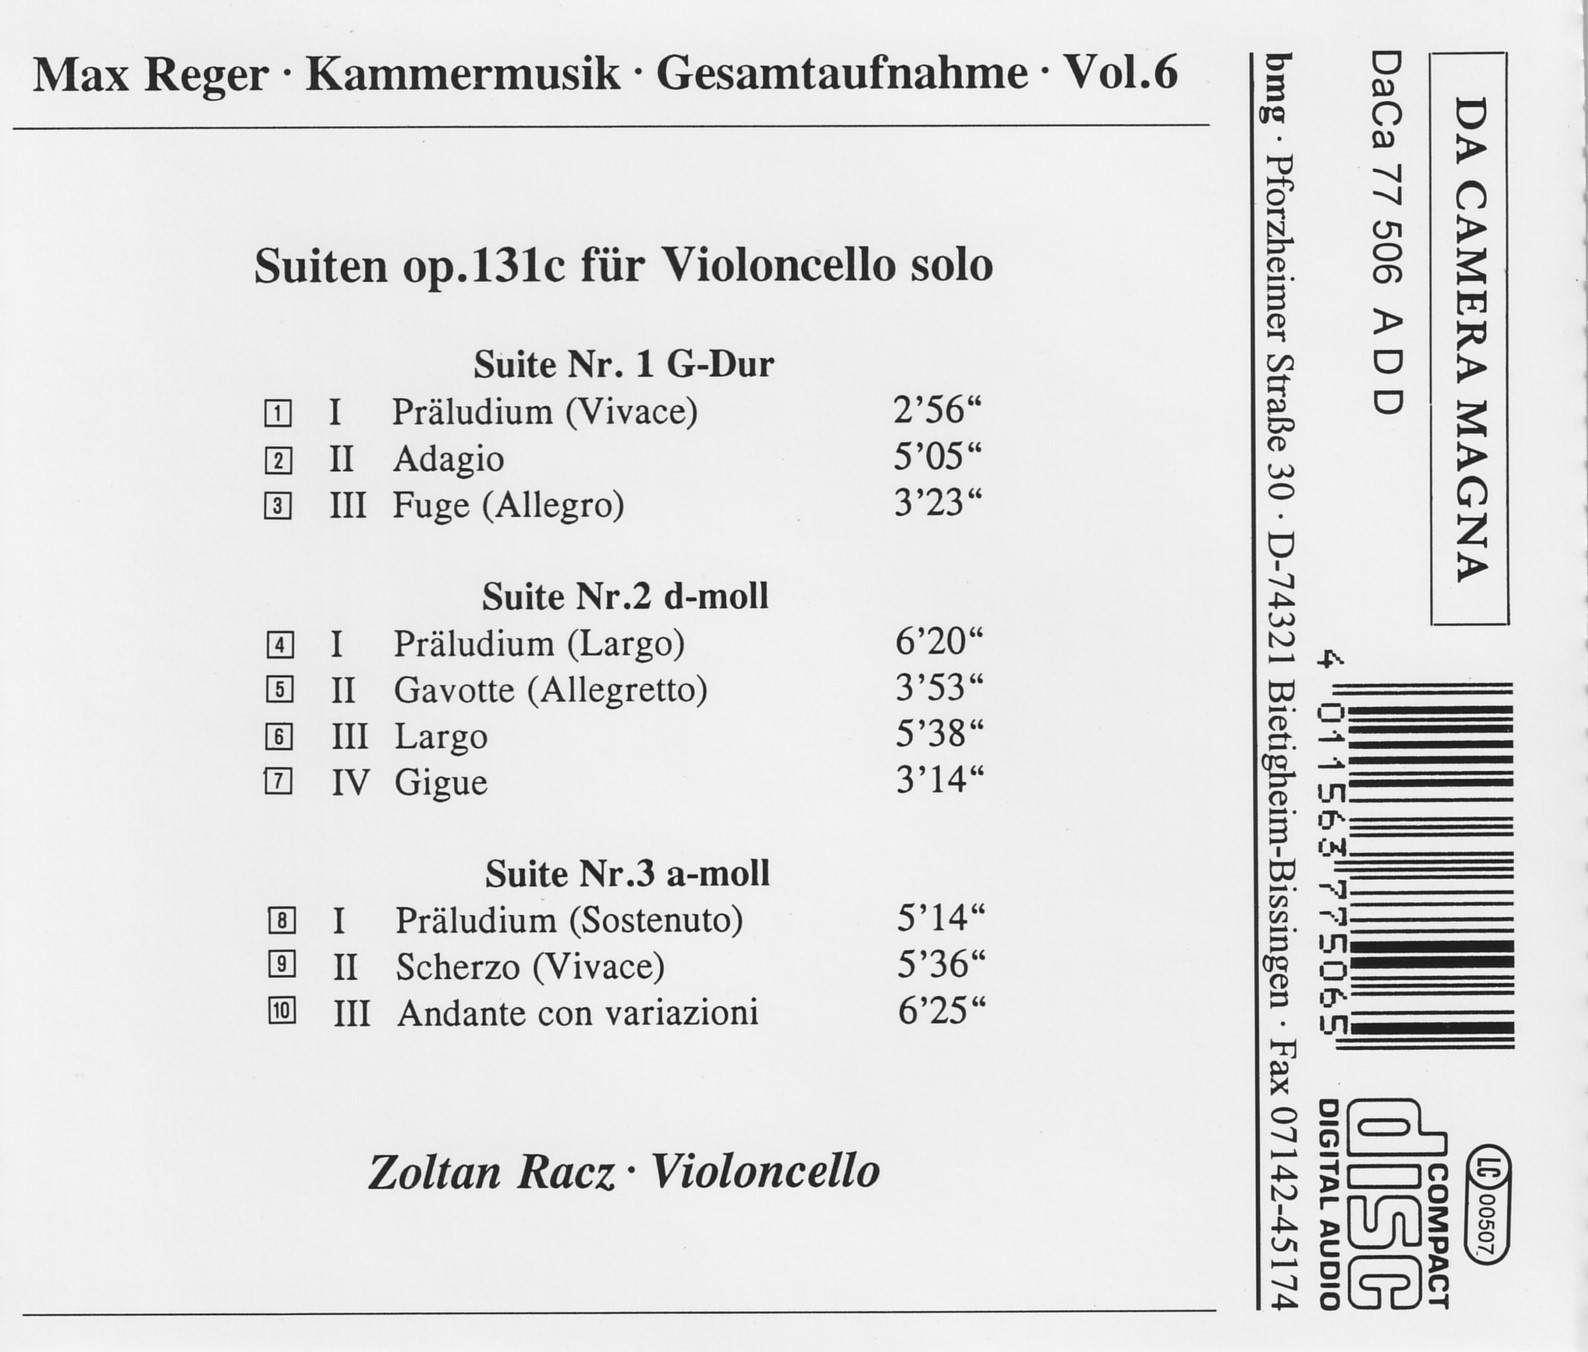 Max Reger - Kammermusik komplett Vol. 6